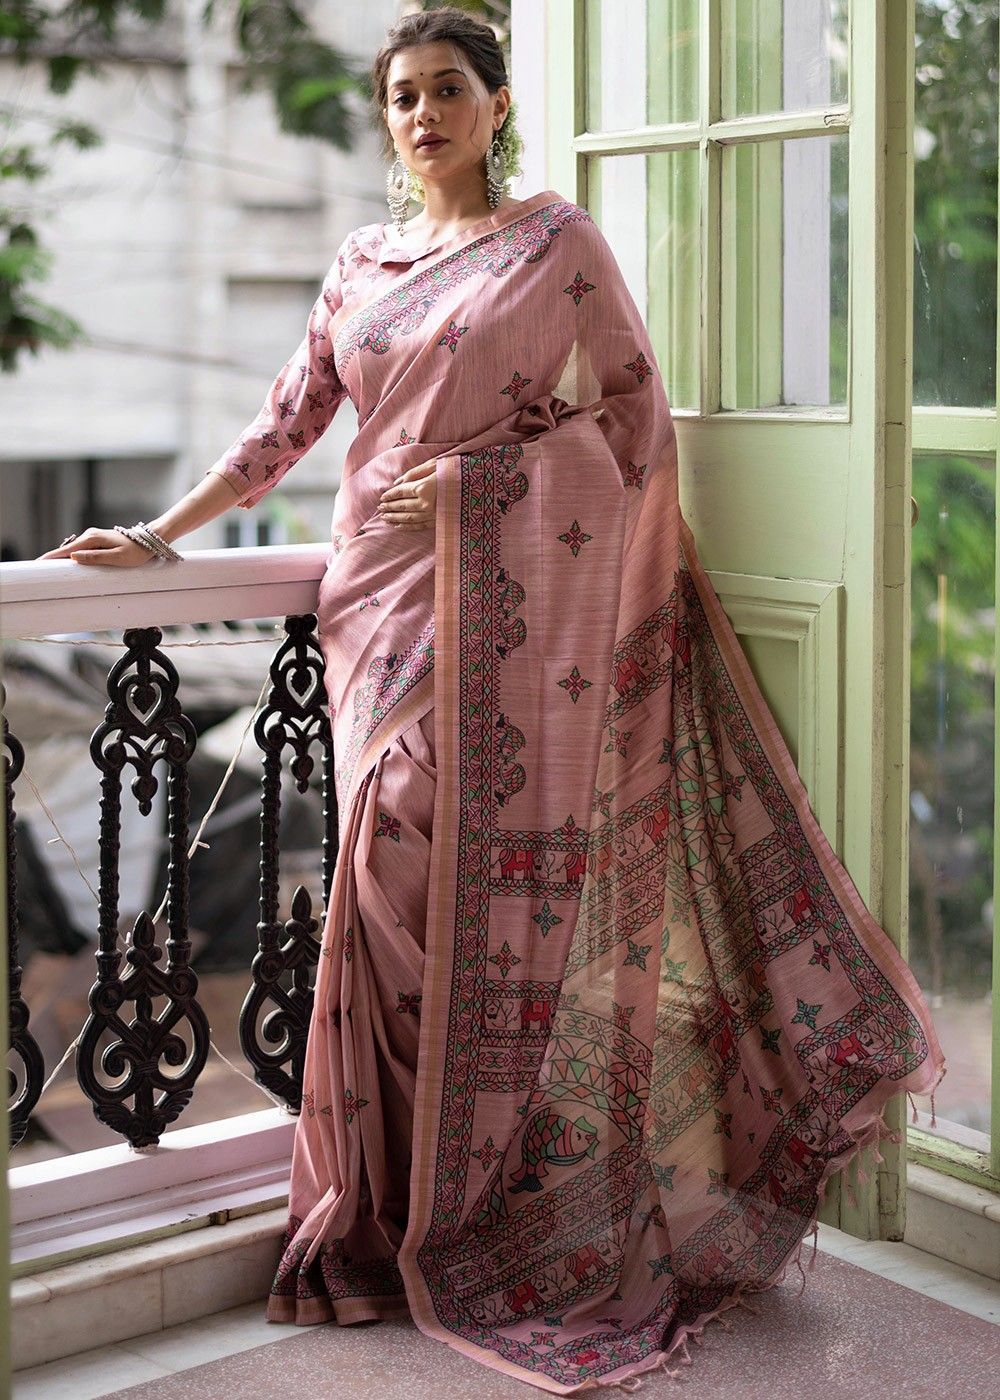 Explore 141+ tussar silk sarees